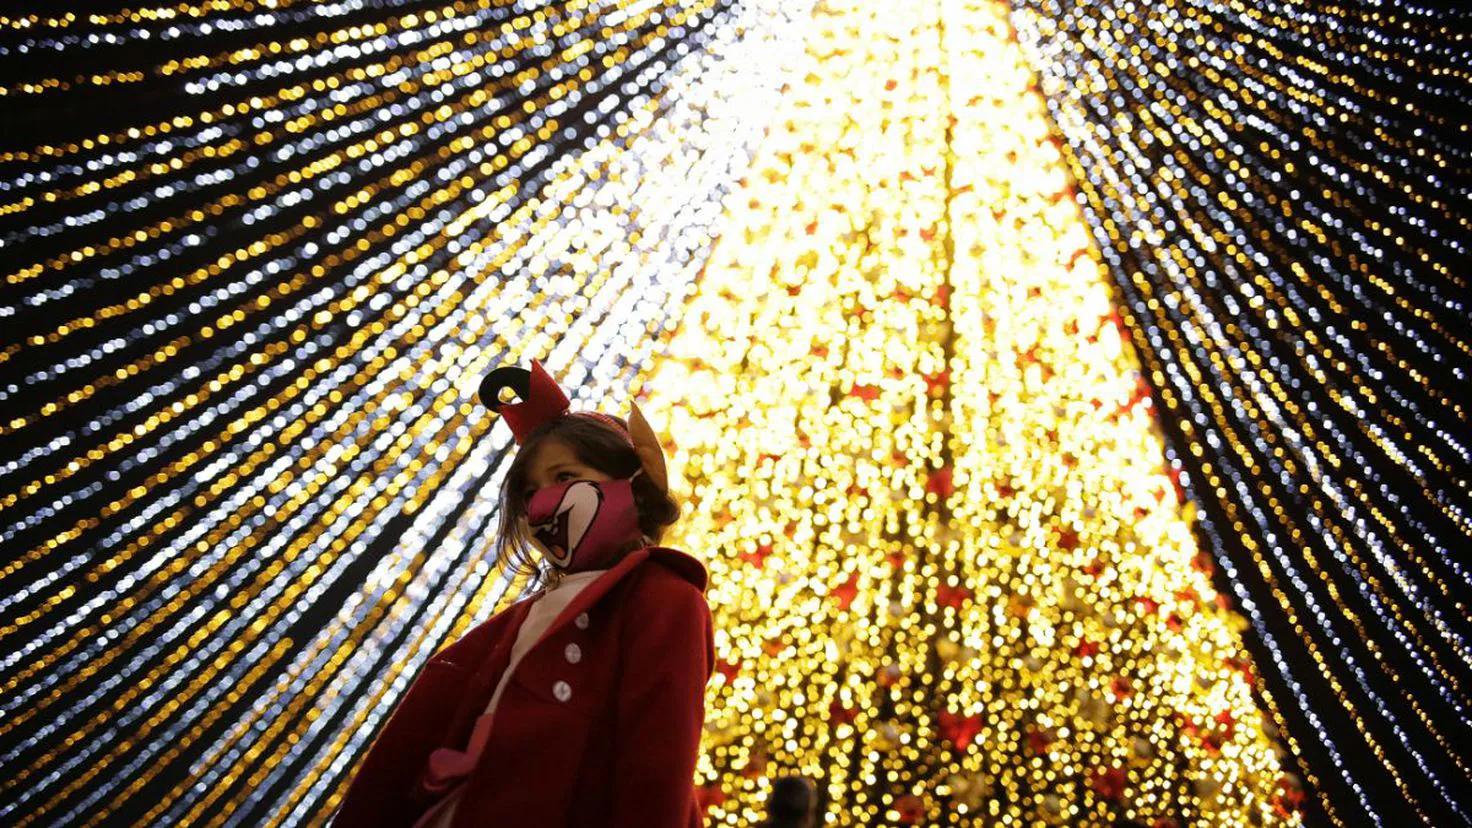 iluminacion navideña medellin - Cuándo encienden el alumbrado navideño en Medellín